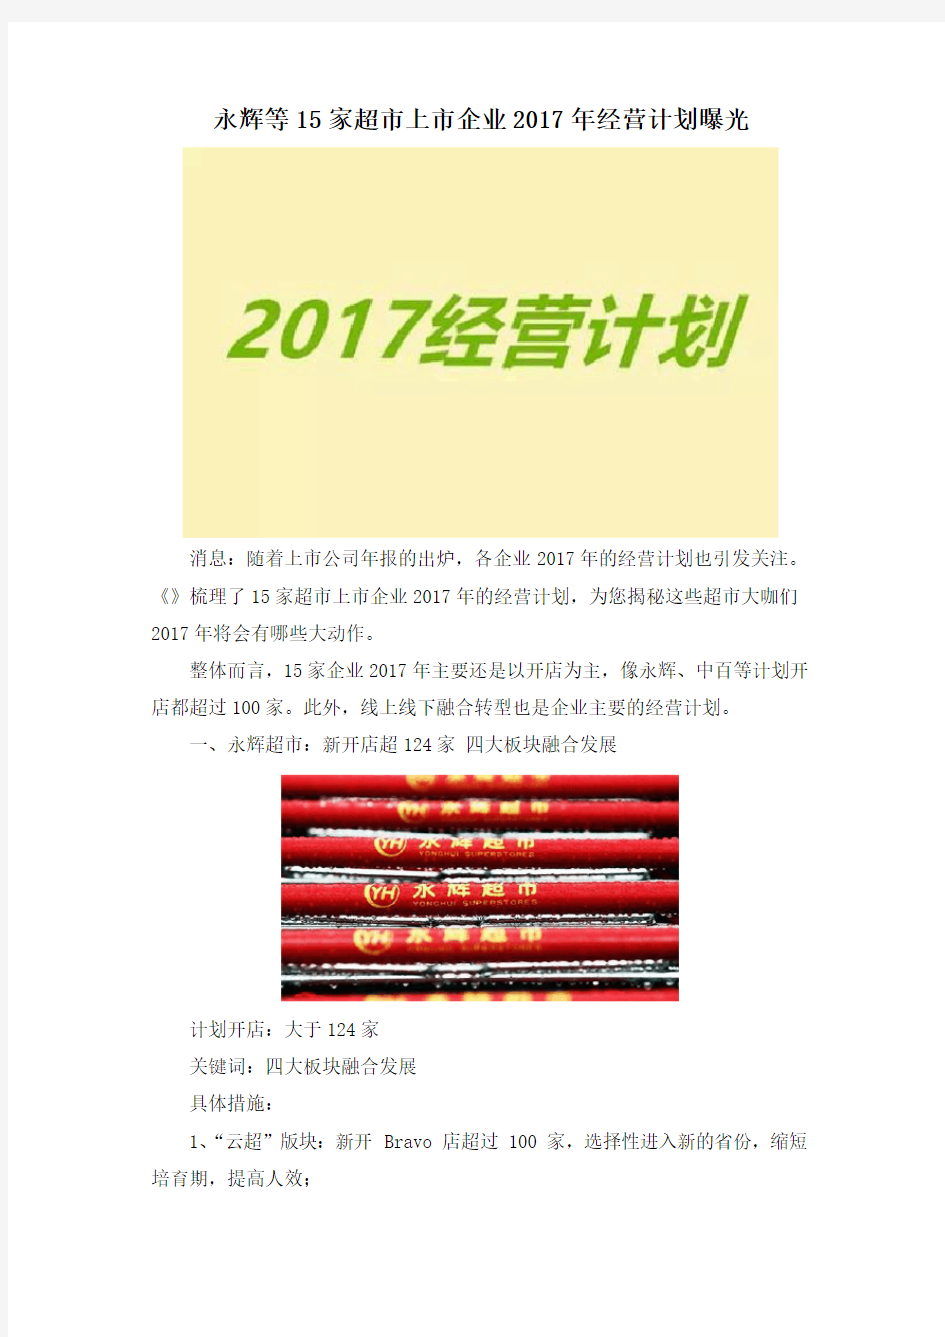 永辉等15家超市上市企业2017年经营计划曝光